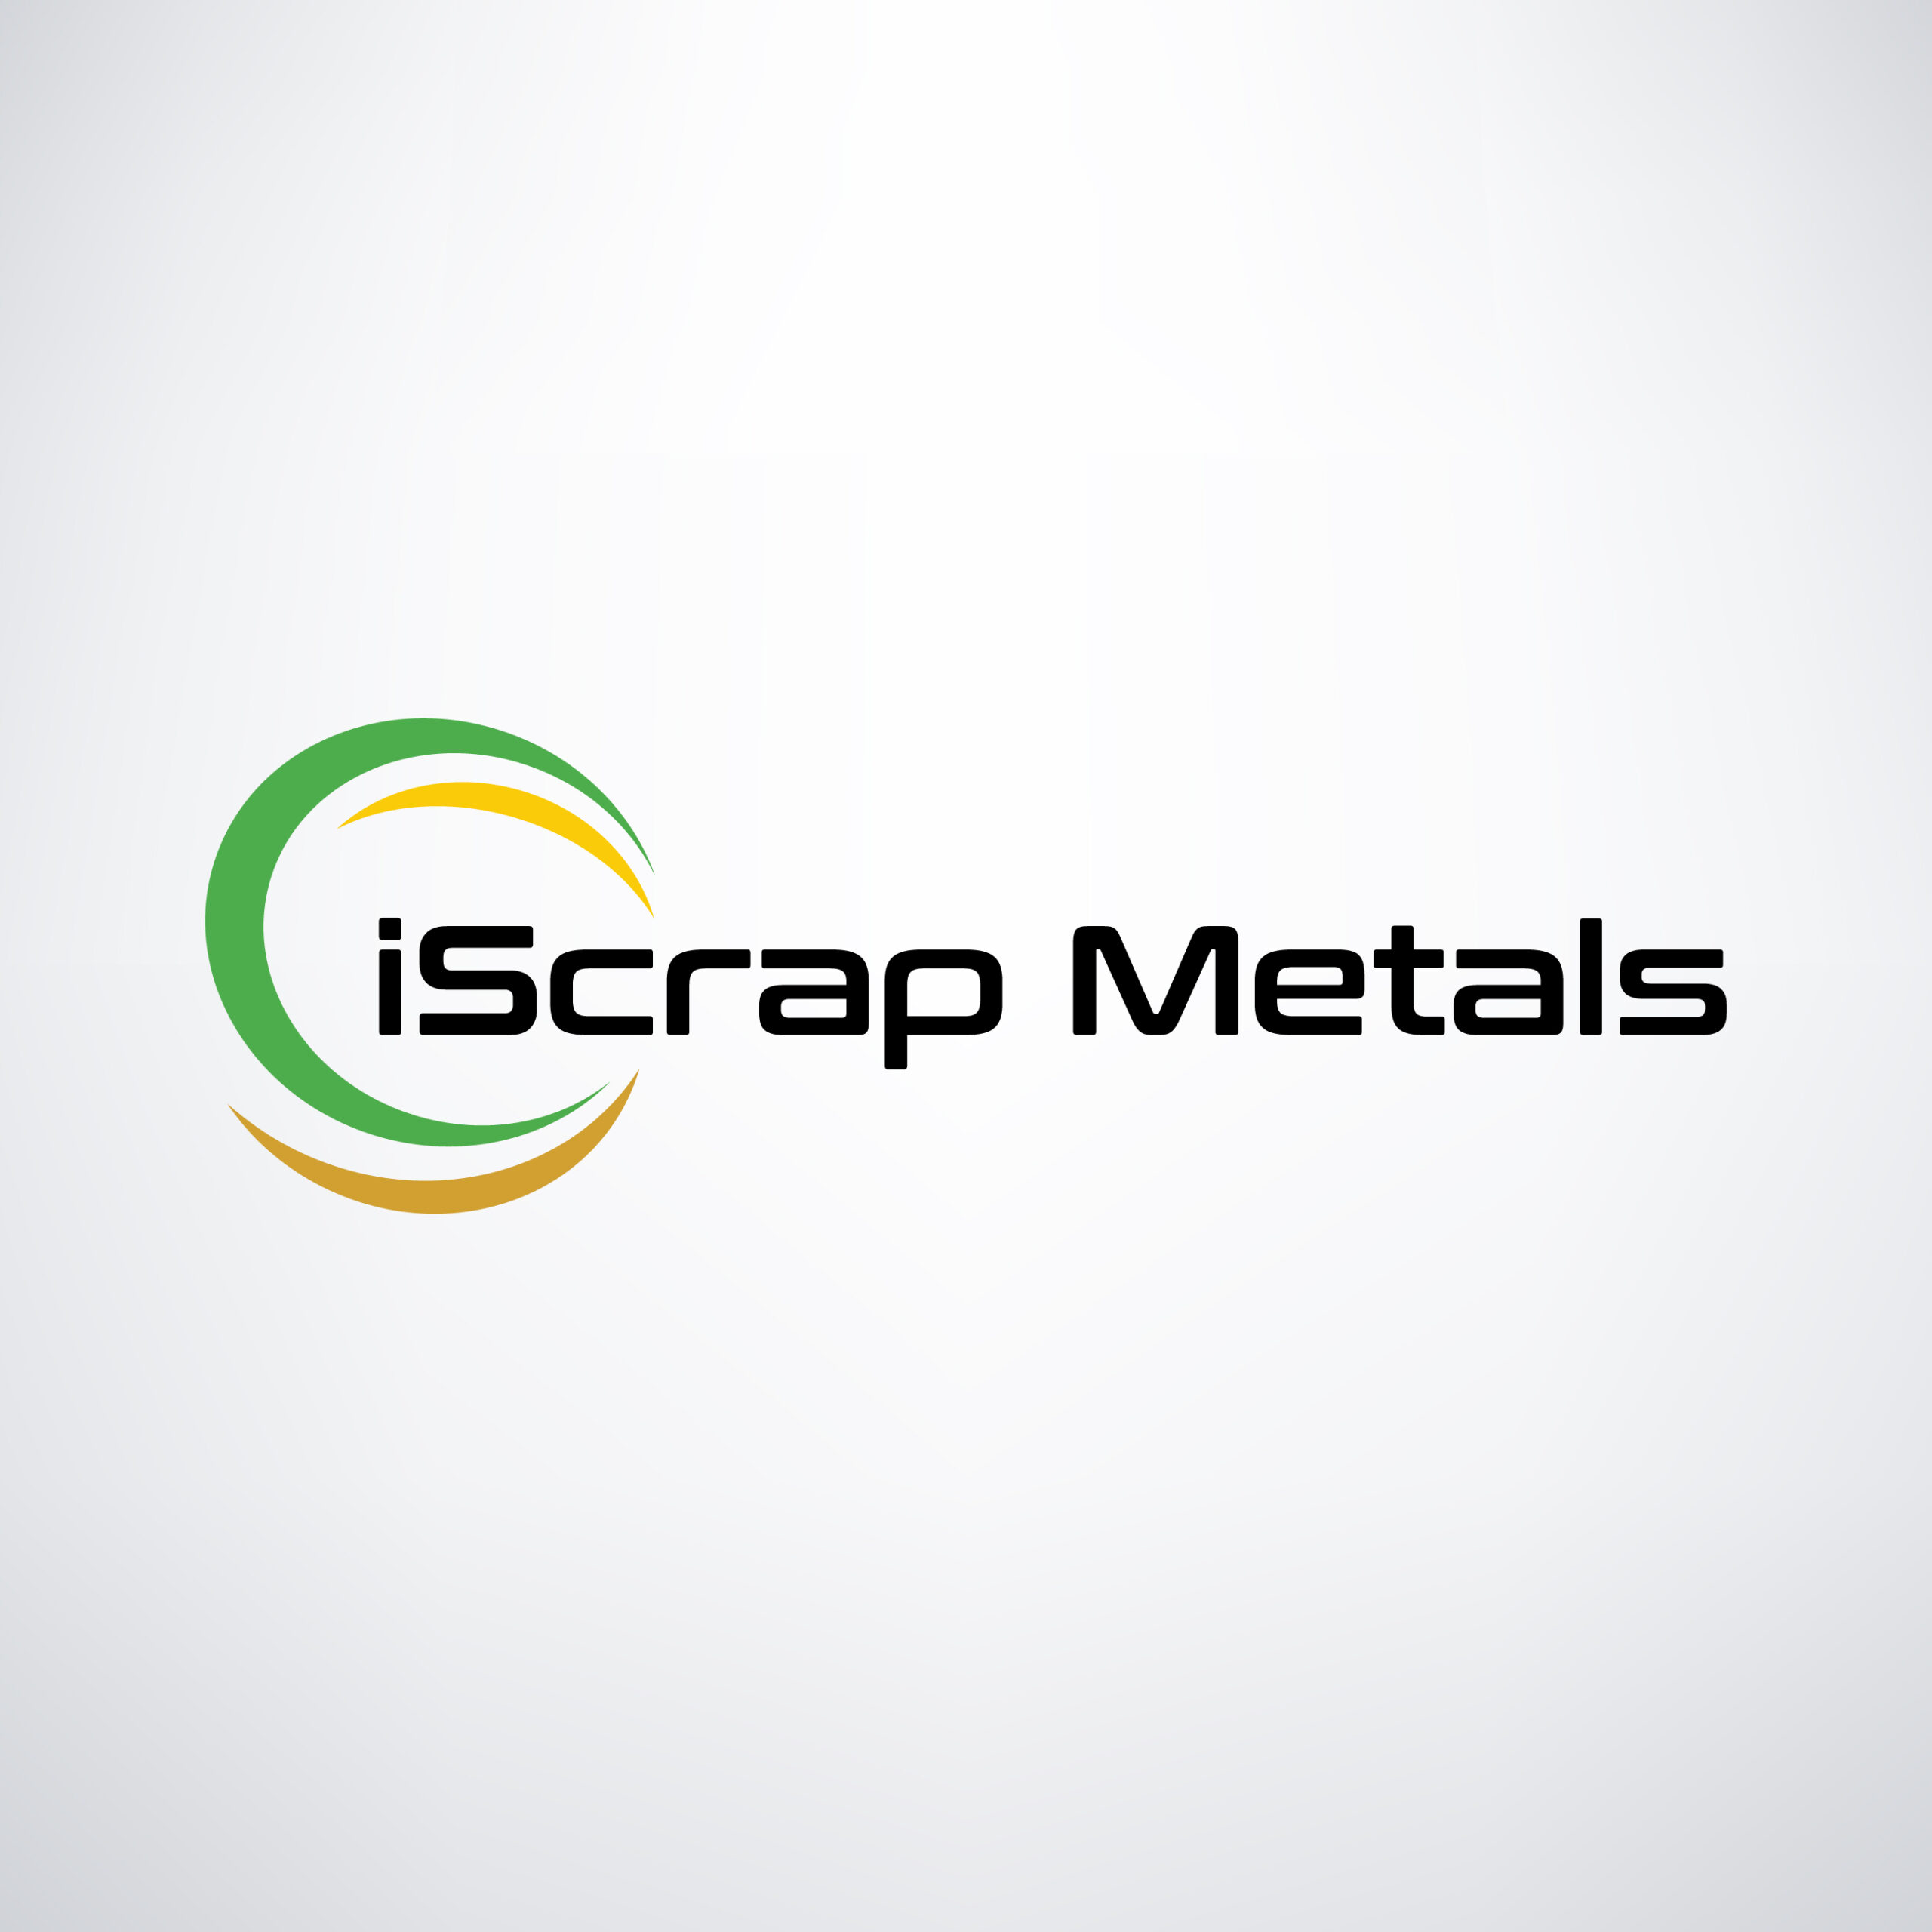 iScrap Metals